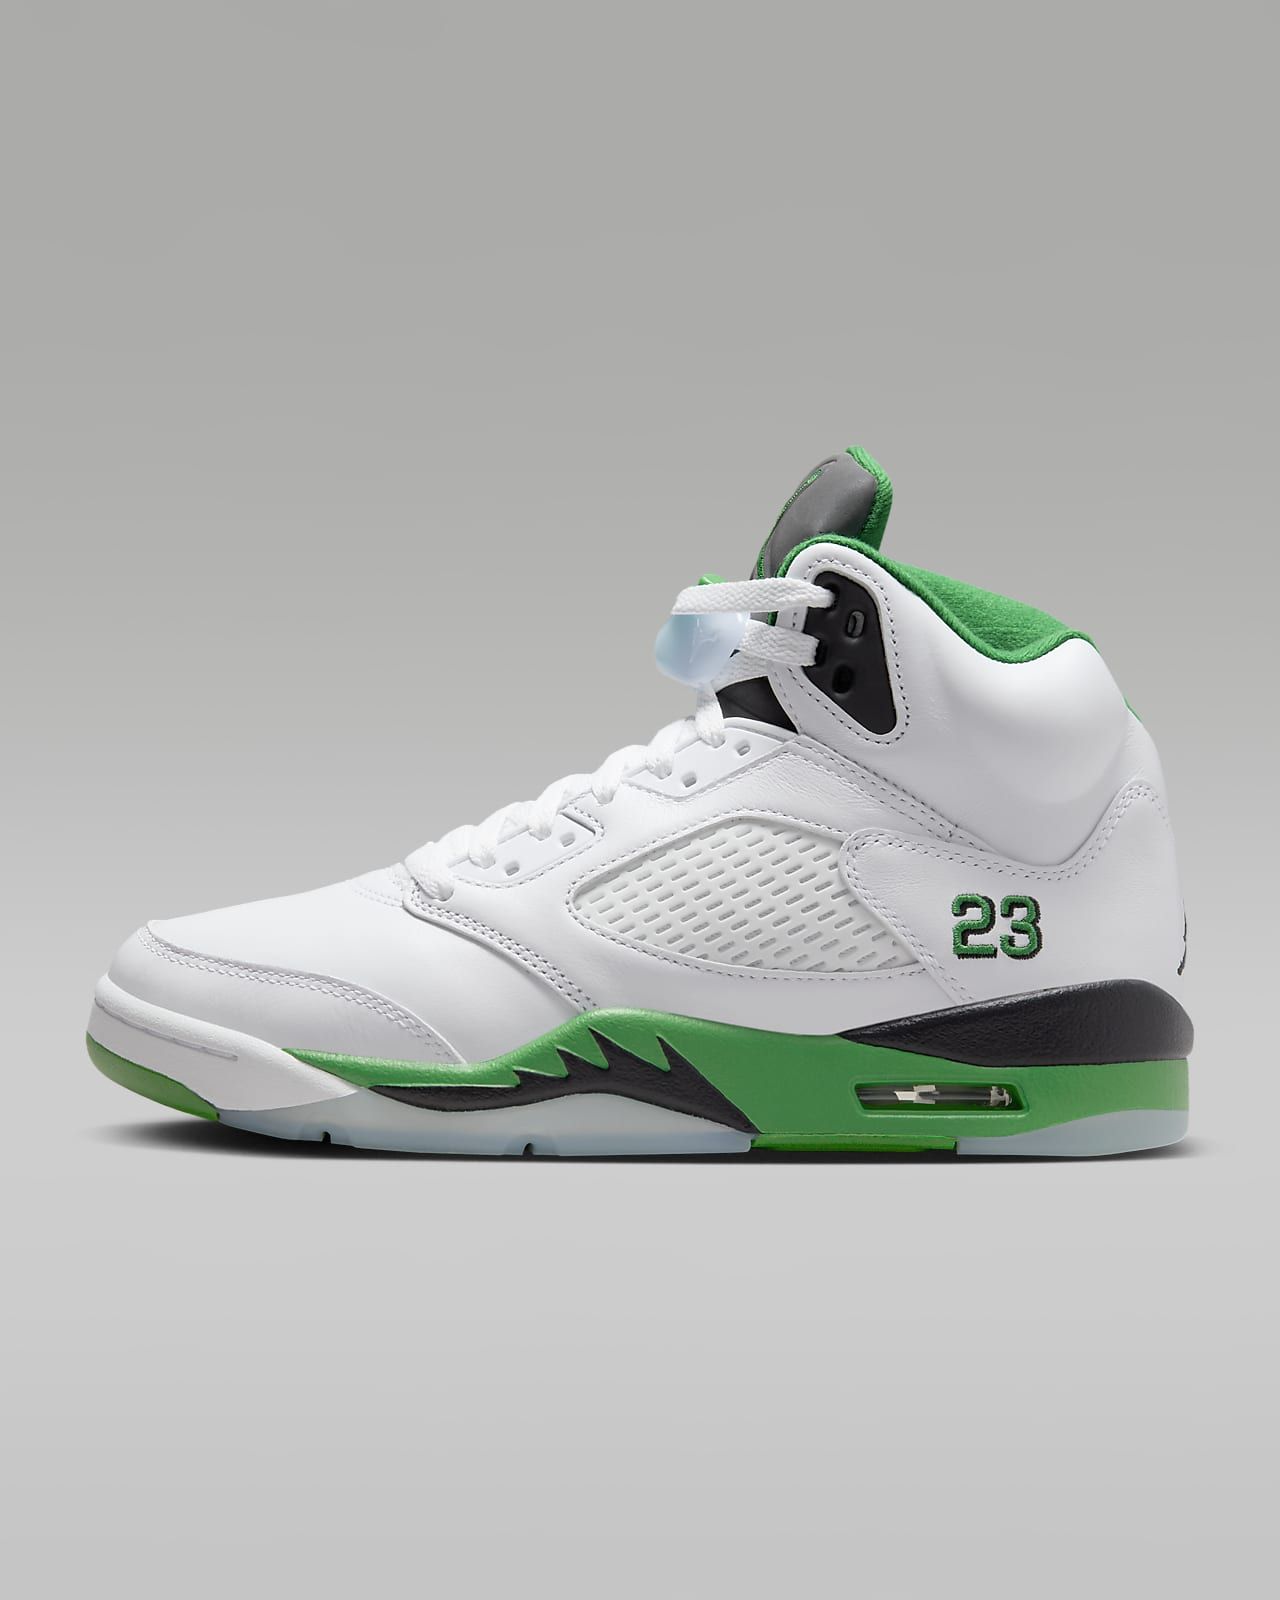 Air Jordan 5 Retro "Lucky Green" Women's Shoes. Nike.com | Nike (US)